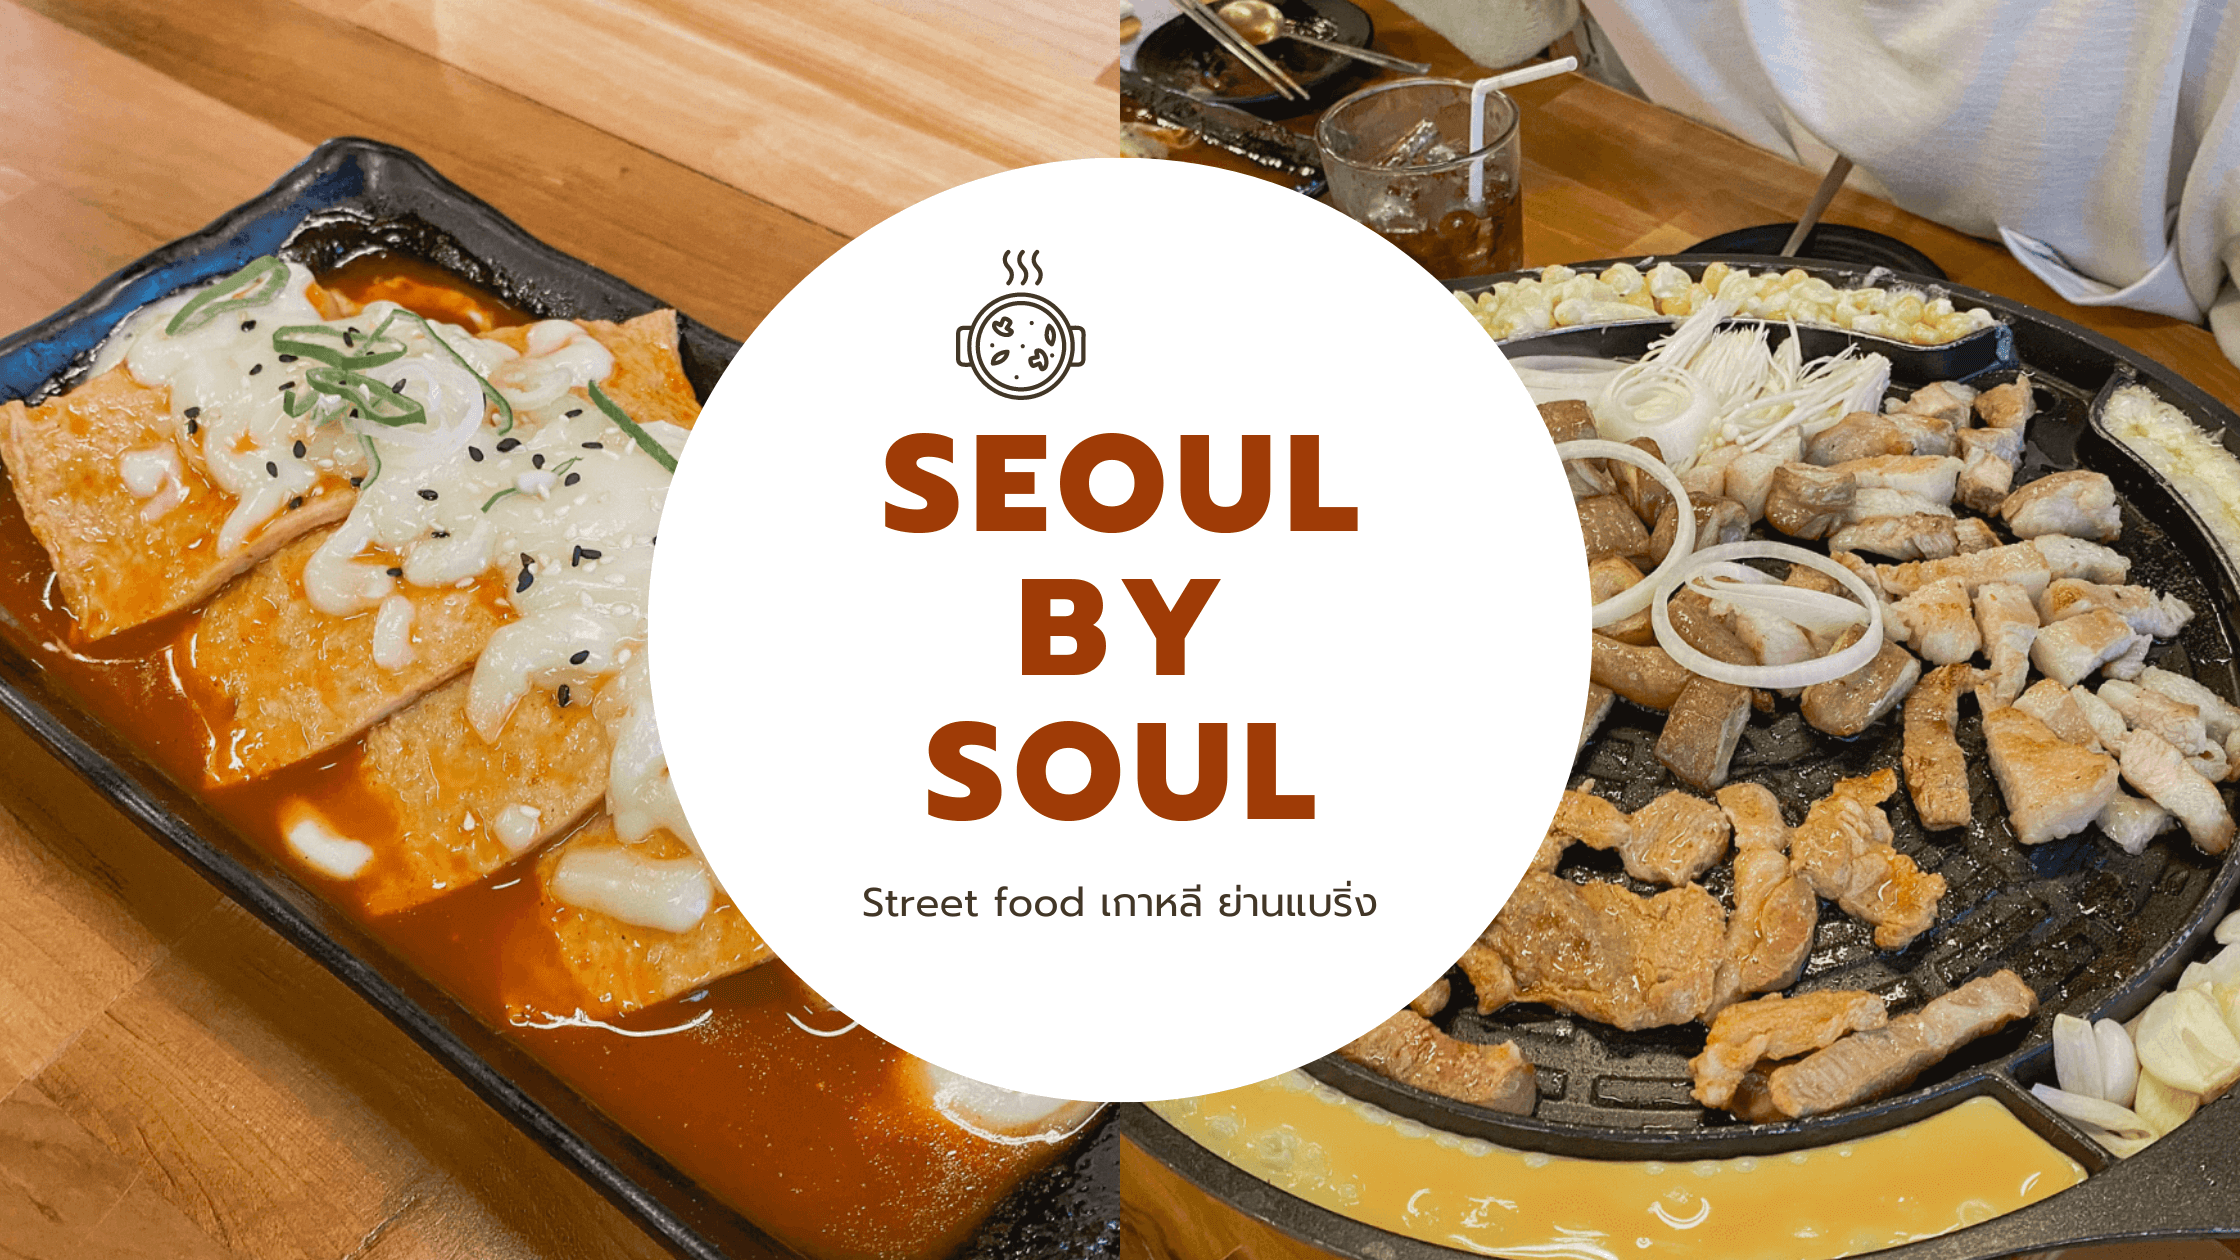 Seoul by Soul